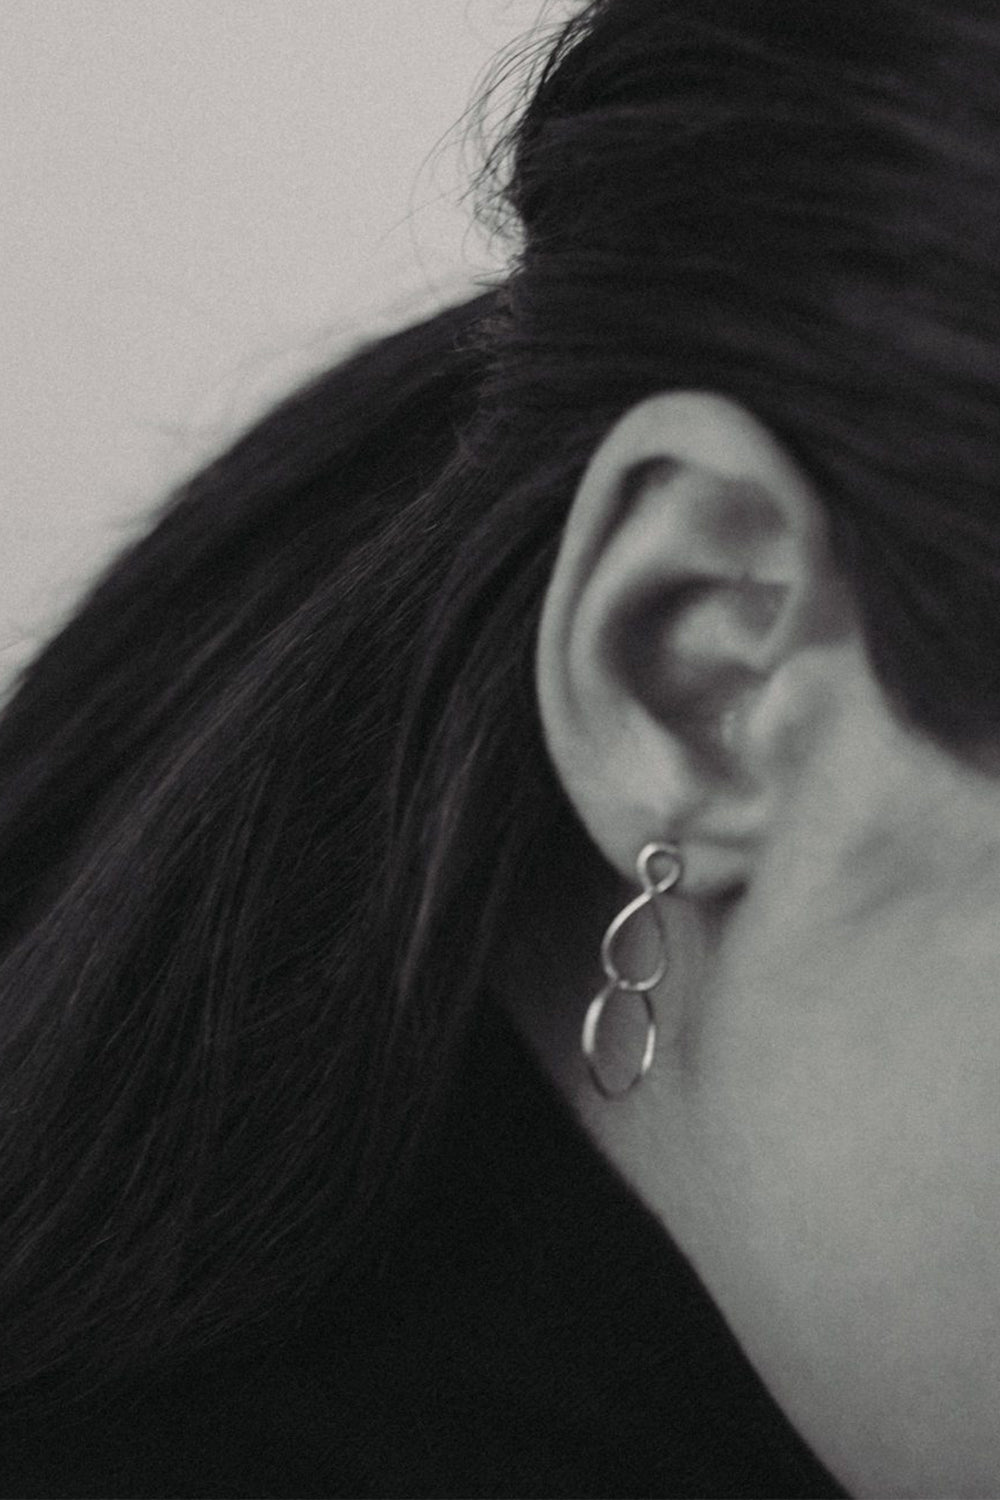 Mini Infinity Twist Earrings | Silver